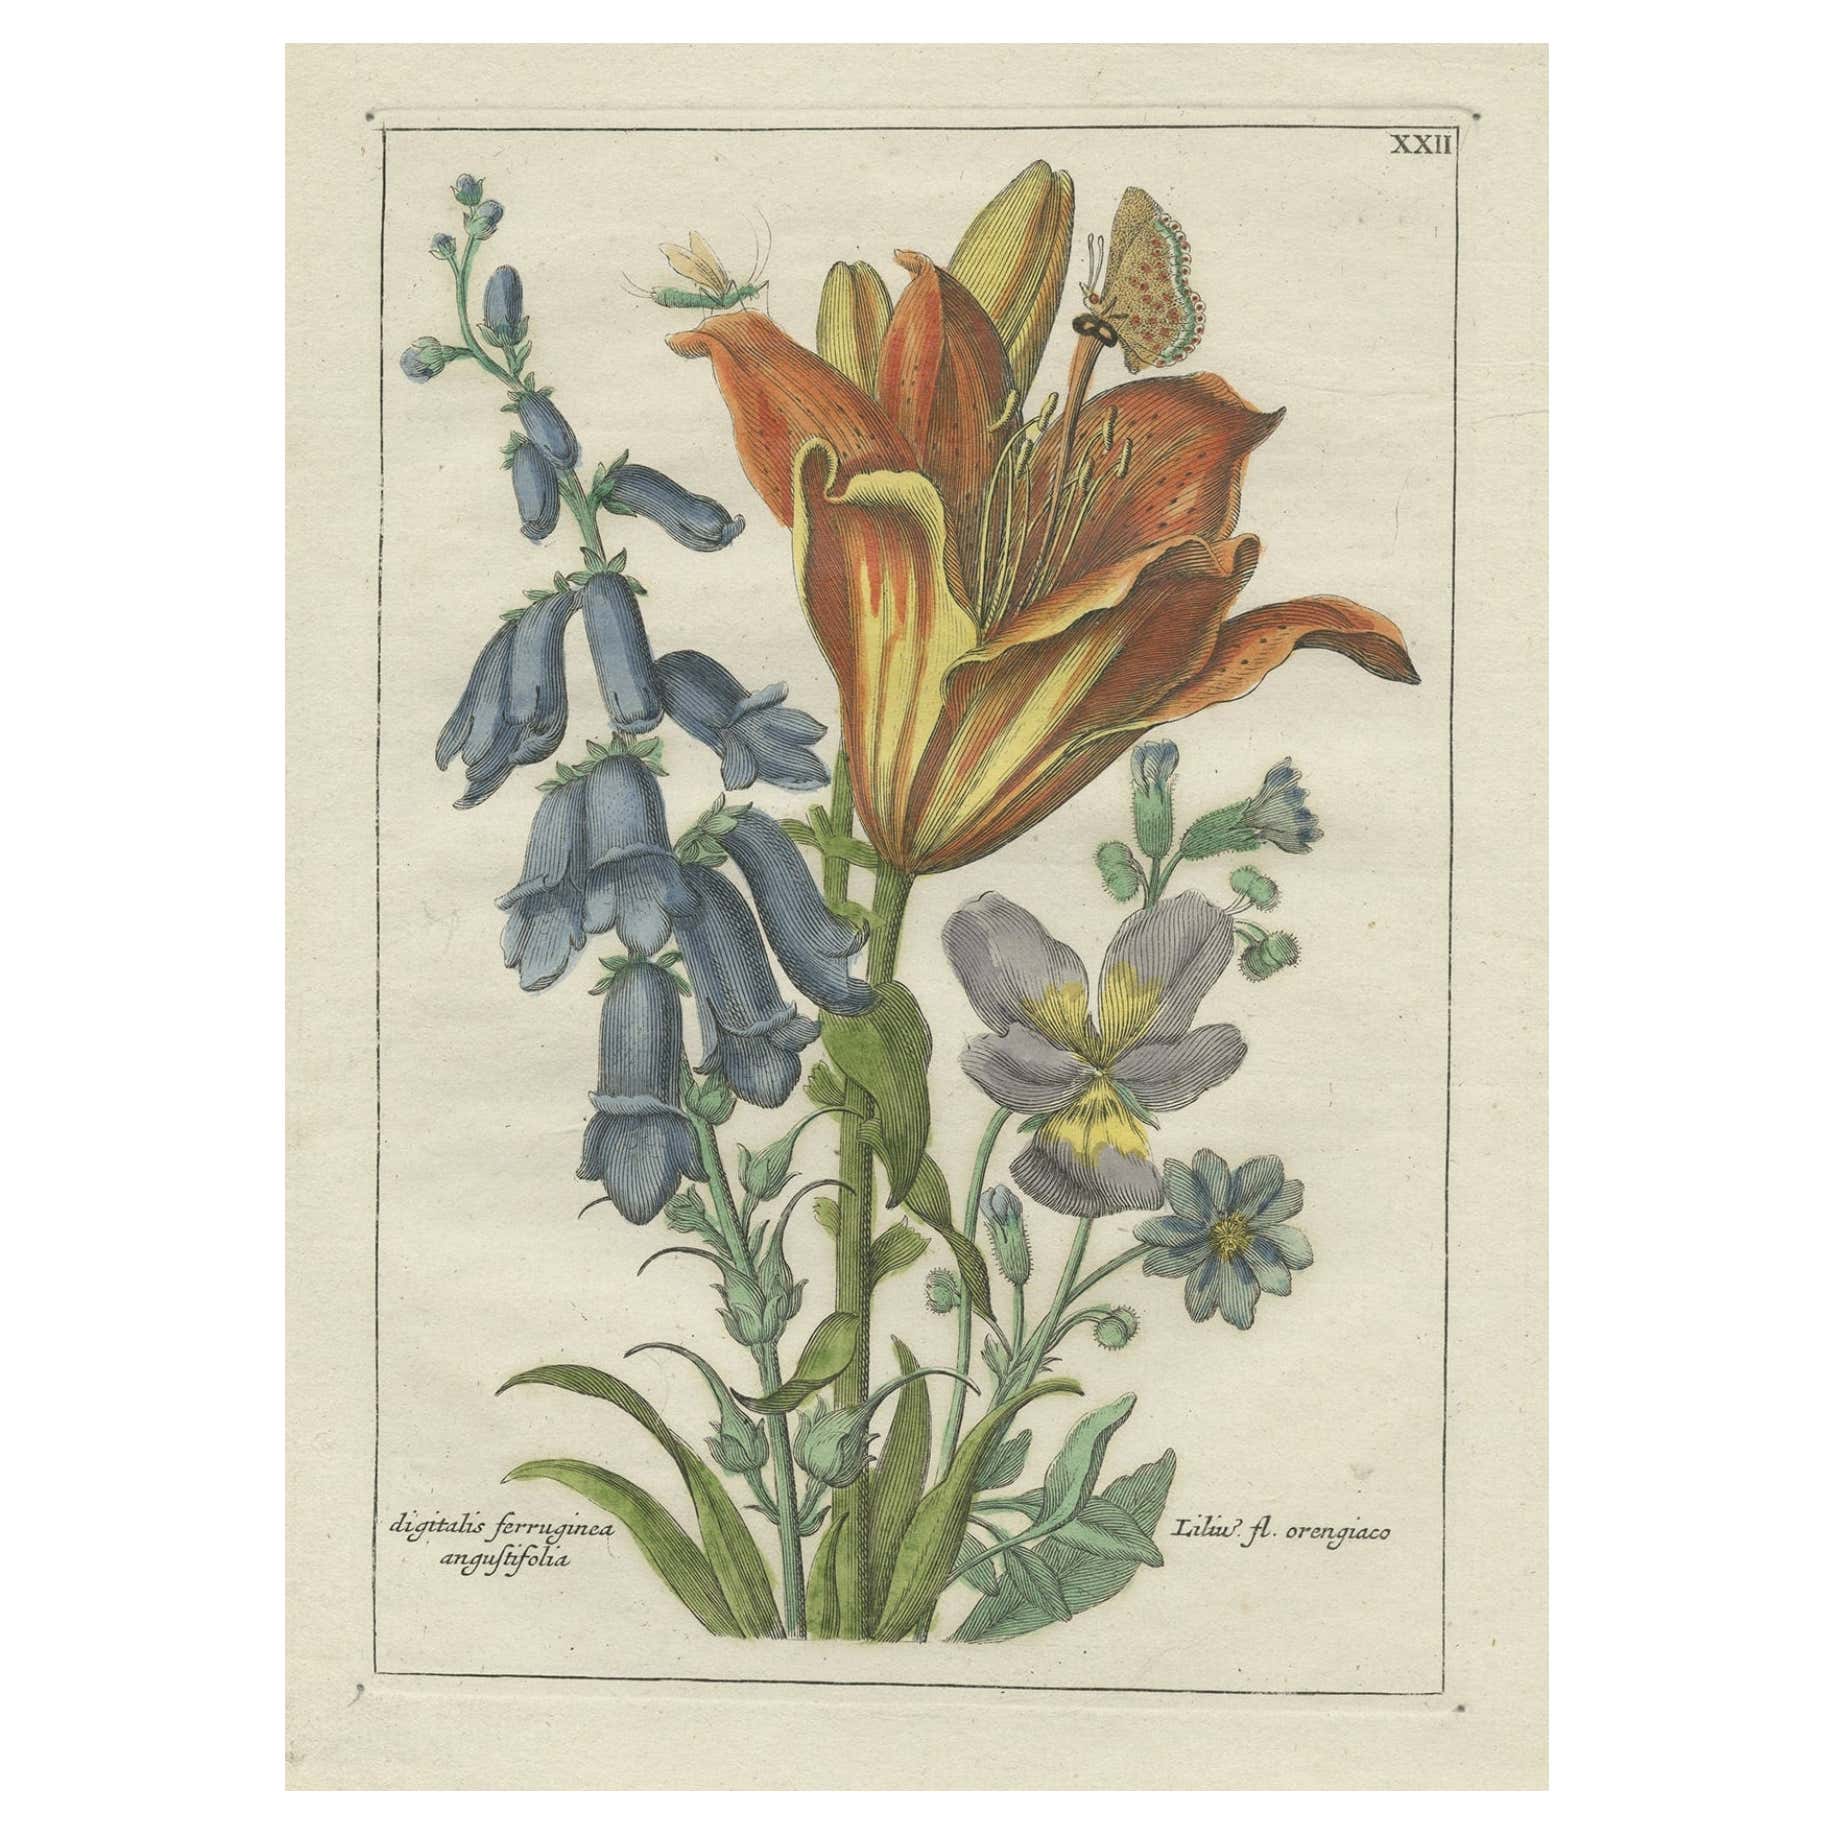 Old Botany-Druck der orangefarbenen Lilie von Digitalis Ferruginea Angustifolia, 1794